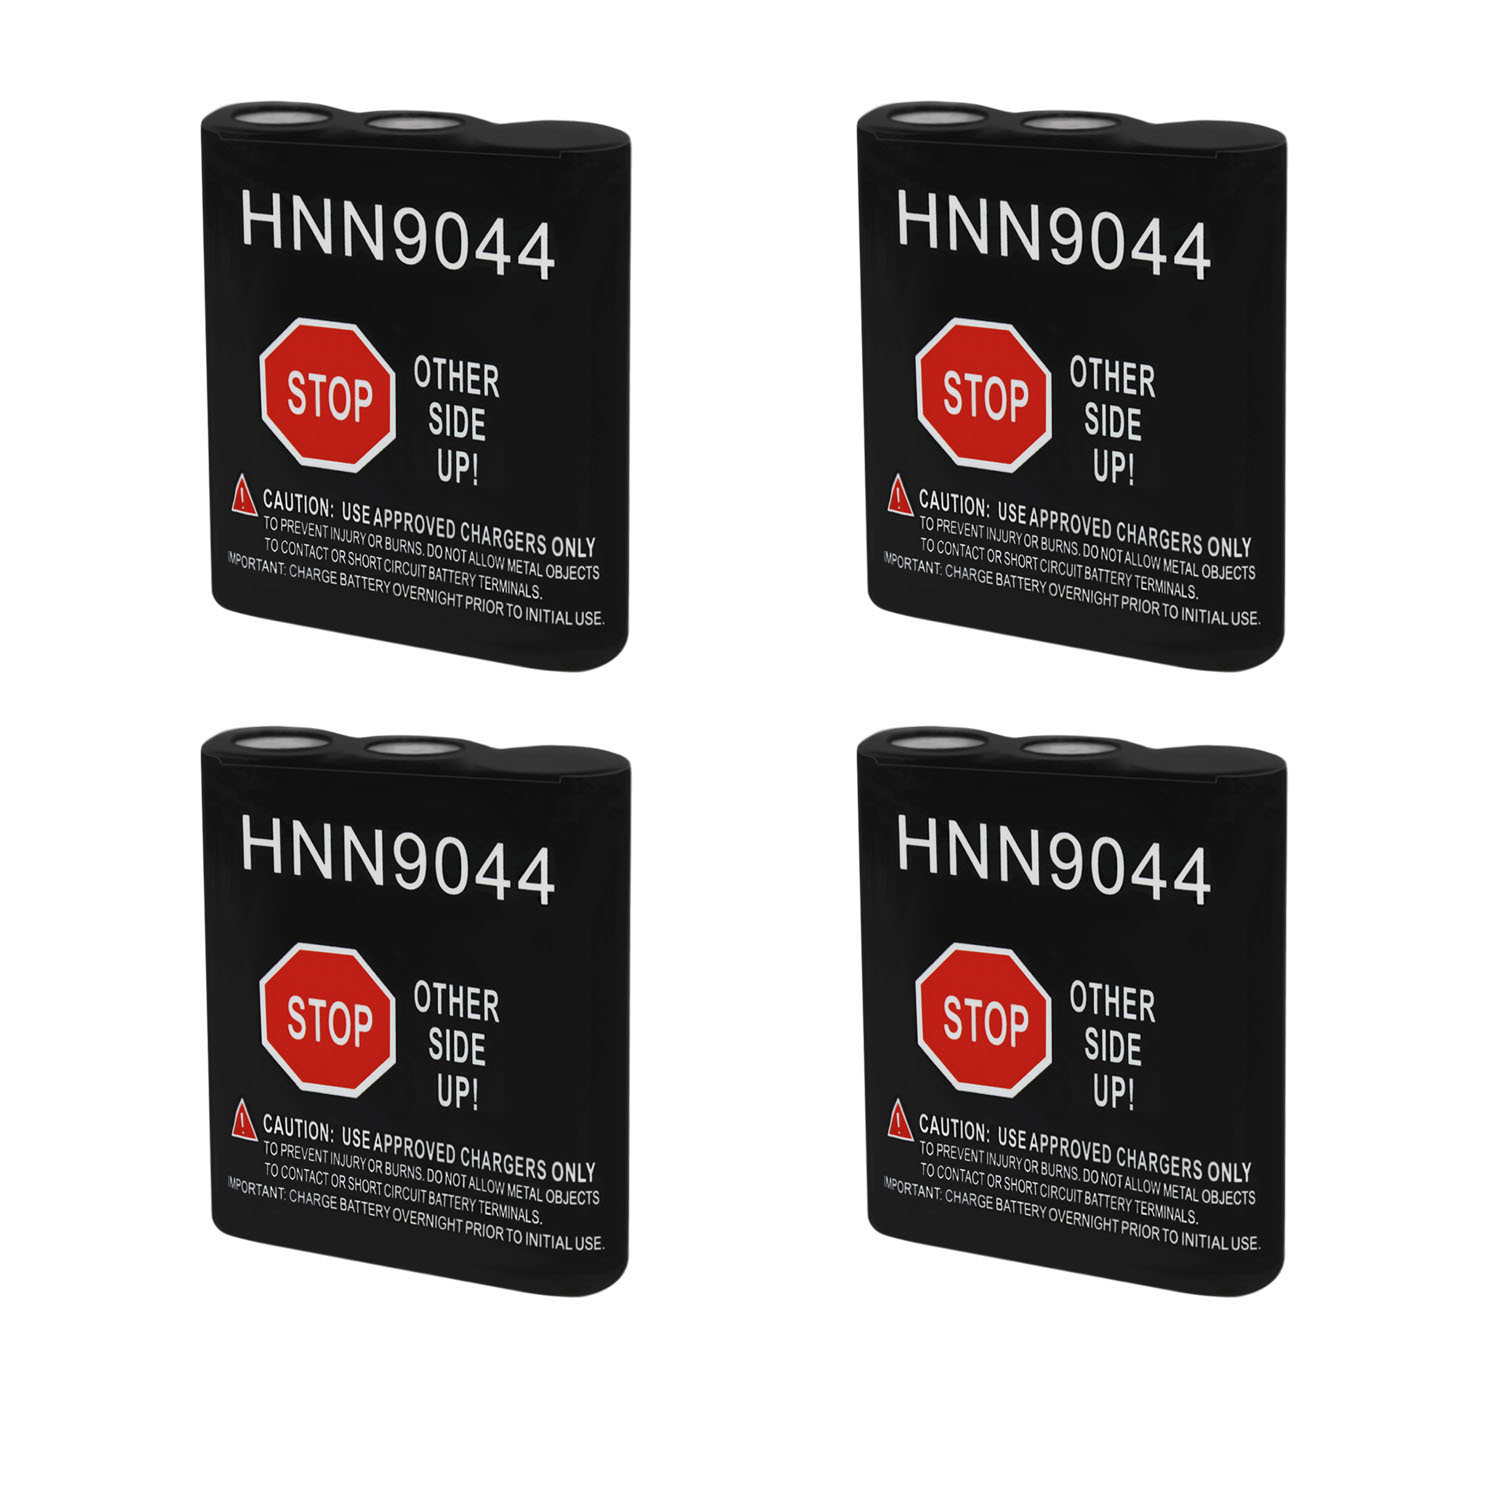 7.5V 600mAh Replacement Battery for Motorola HNN9018, HNN9027 - 4 Pack